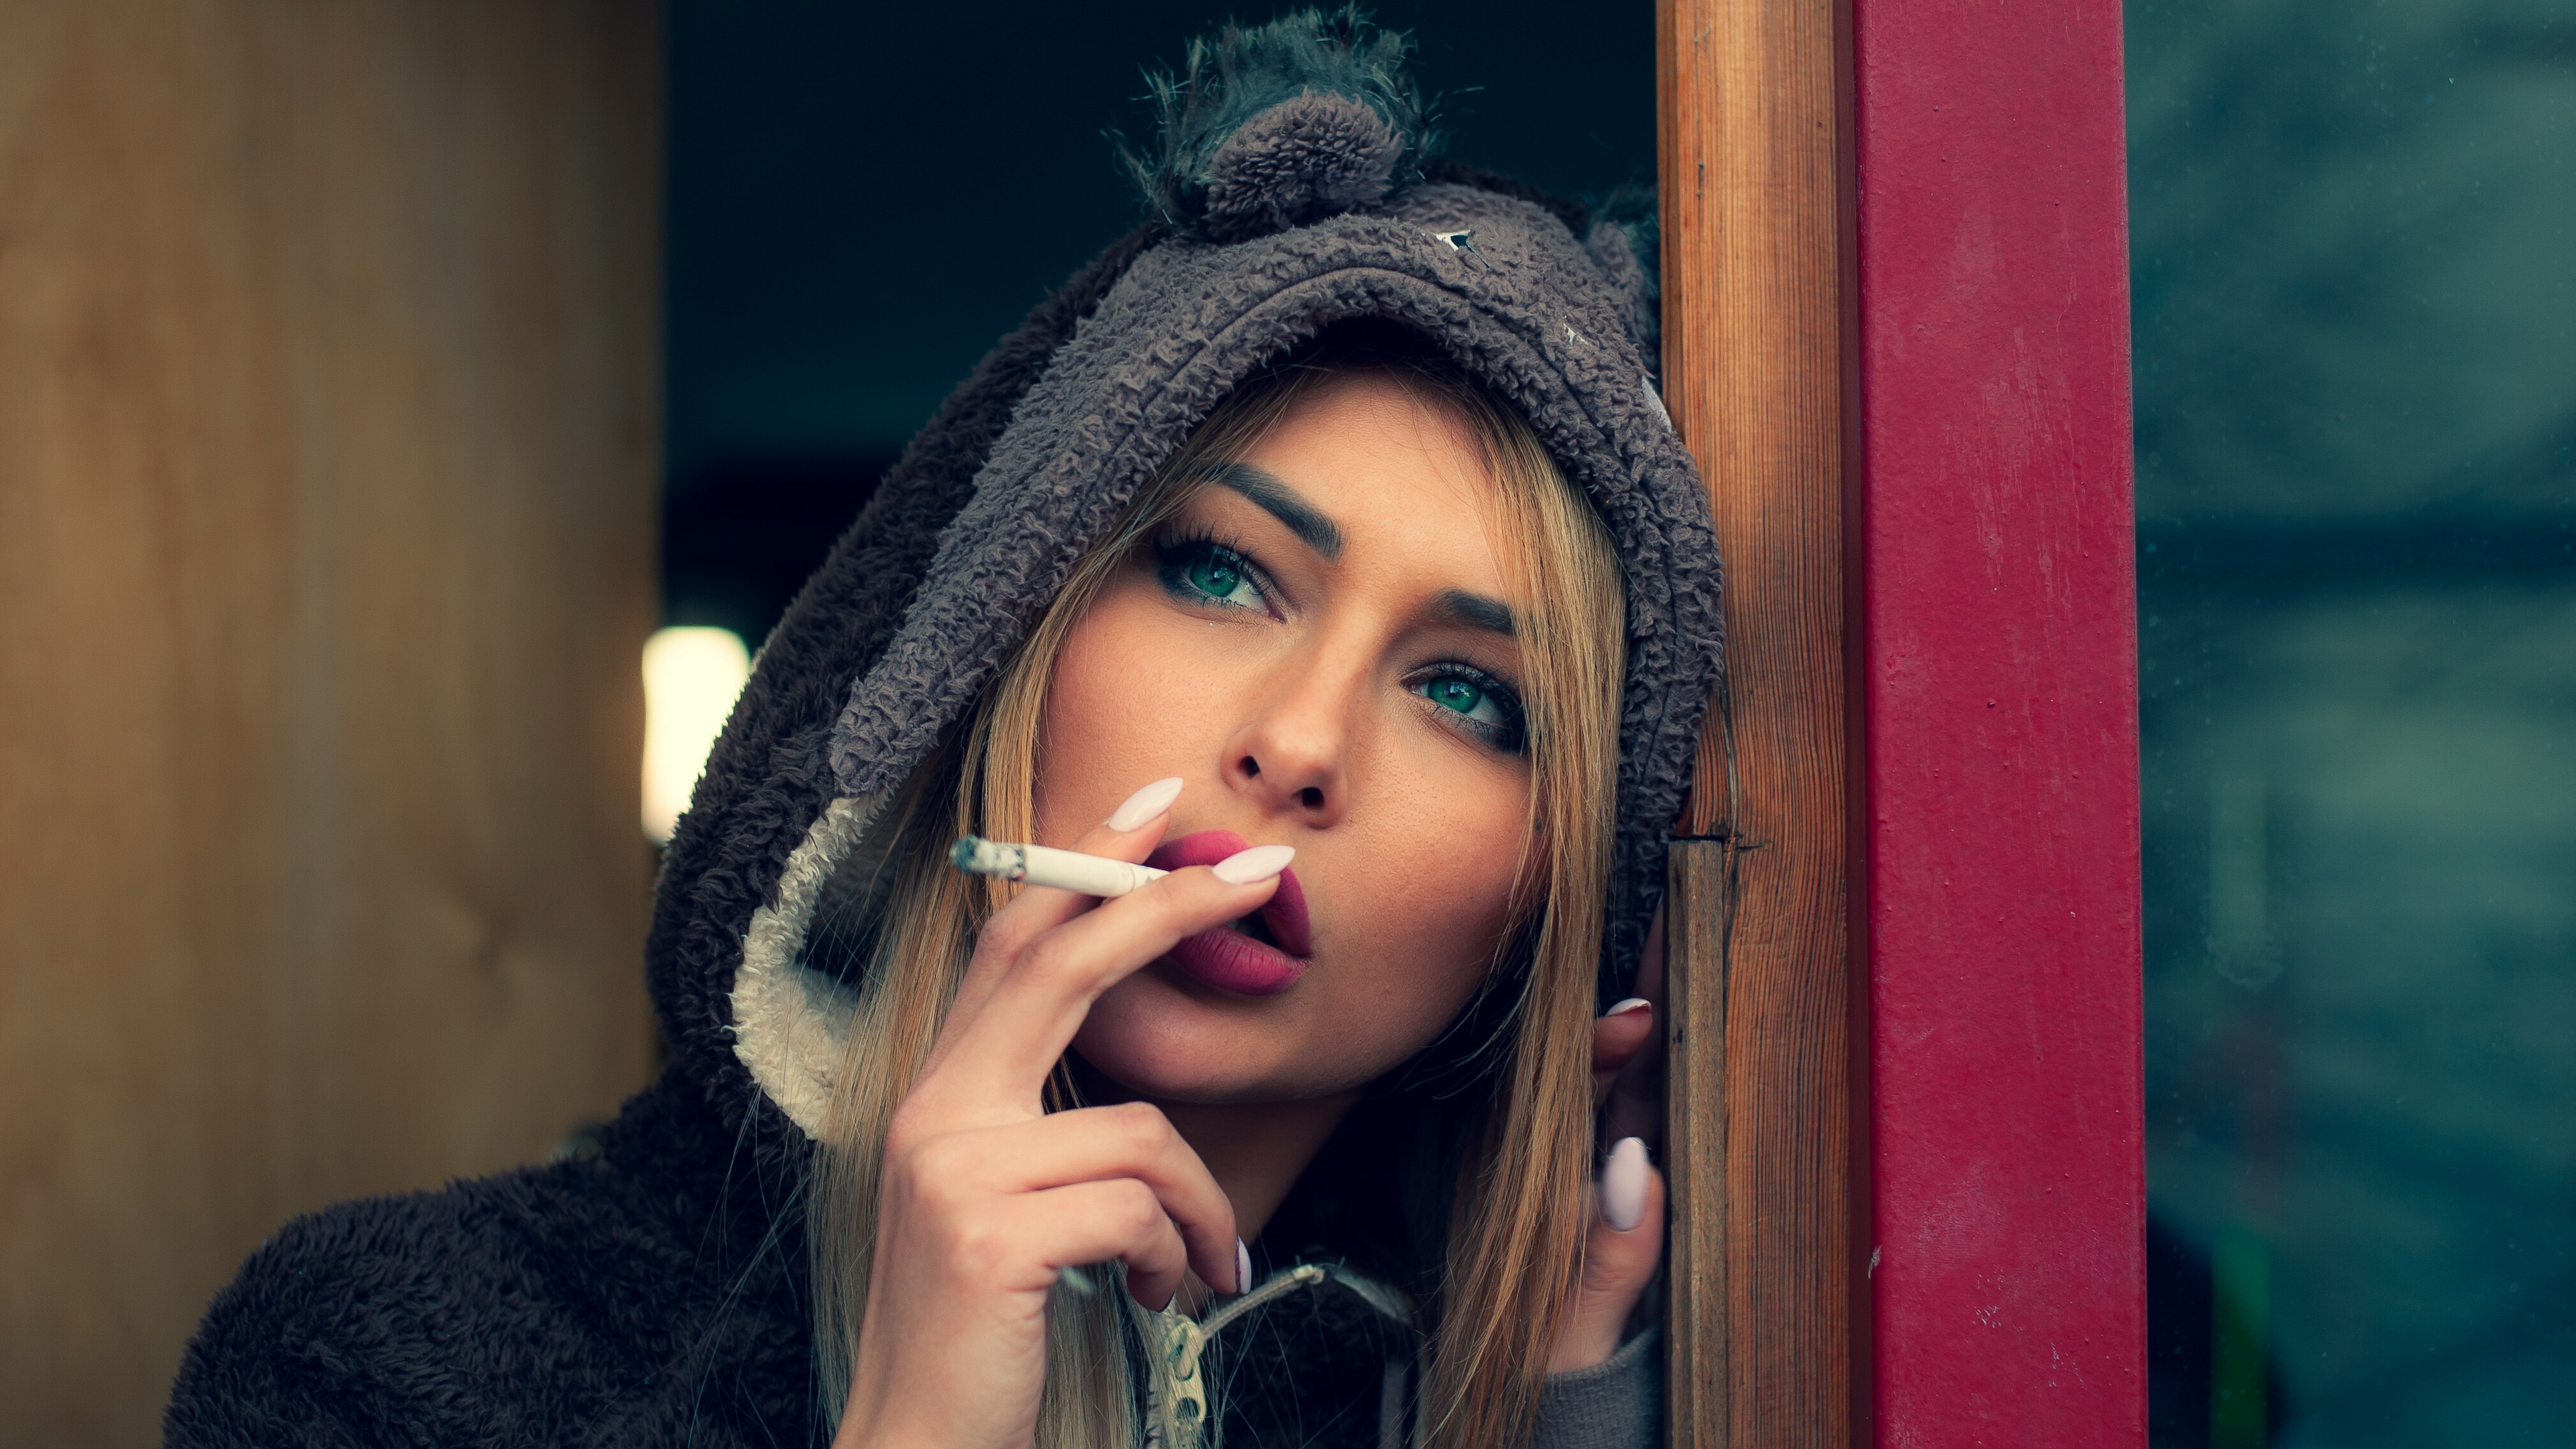 Free download wallpaper Blonde, Hood, Model, Women, Green Eyes, Smoking on your PC desktop